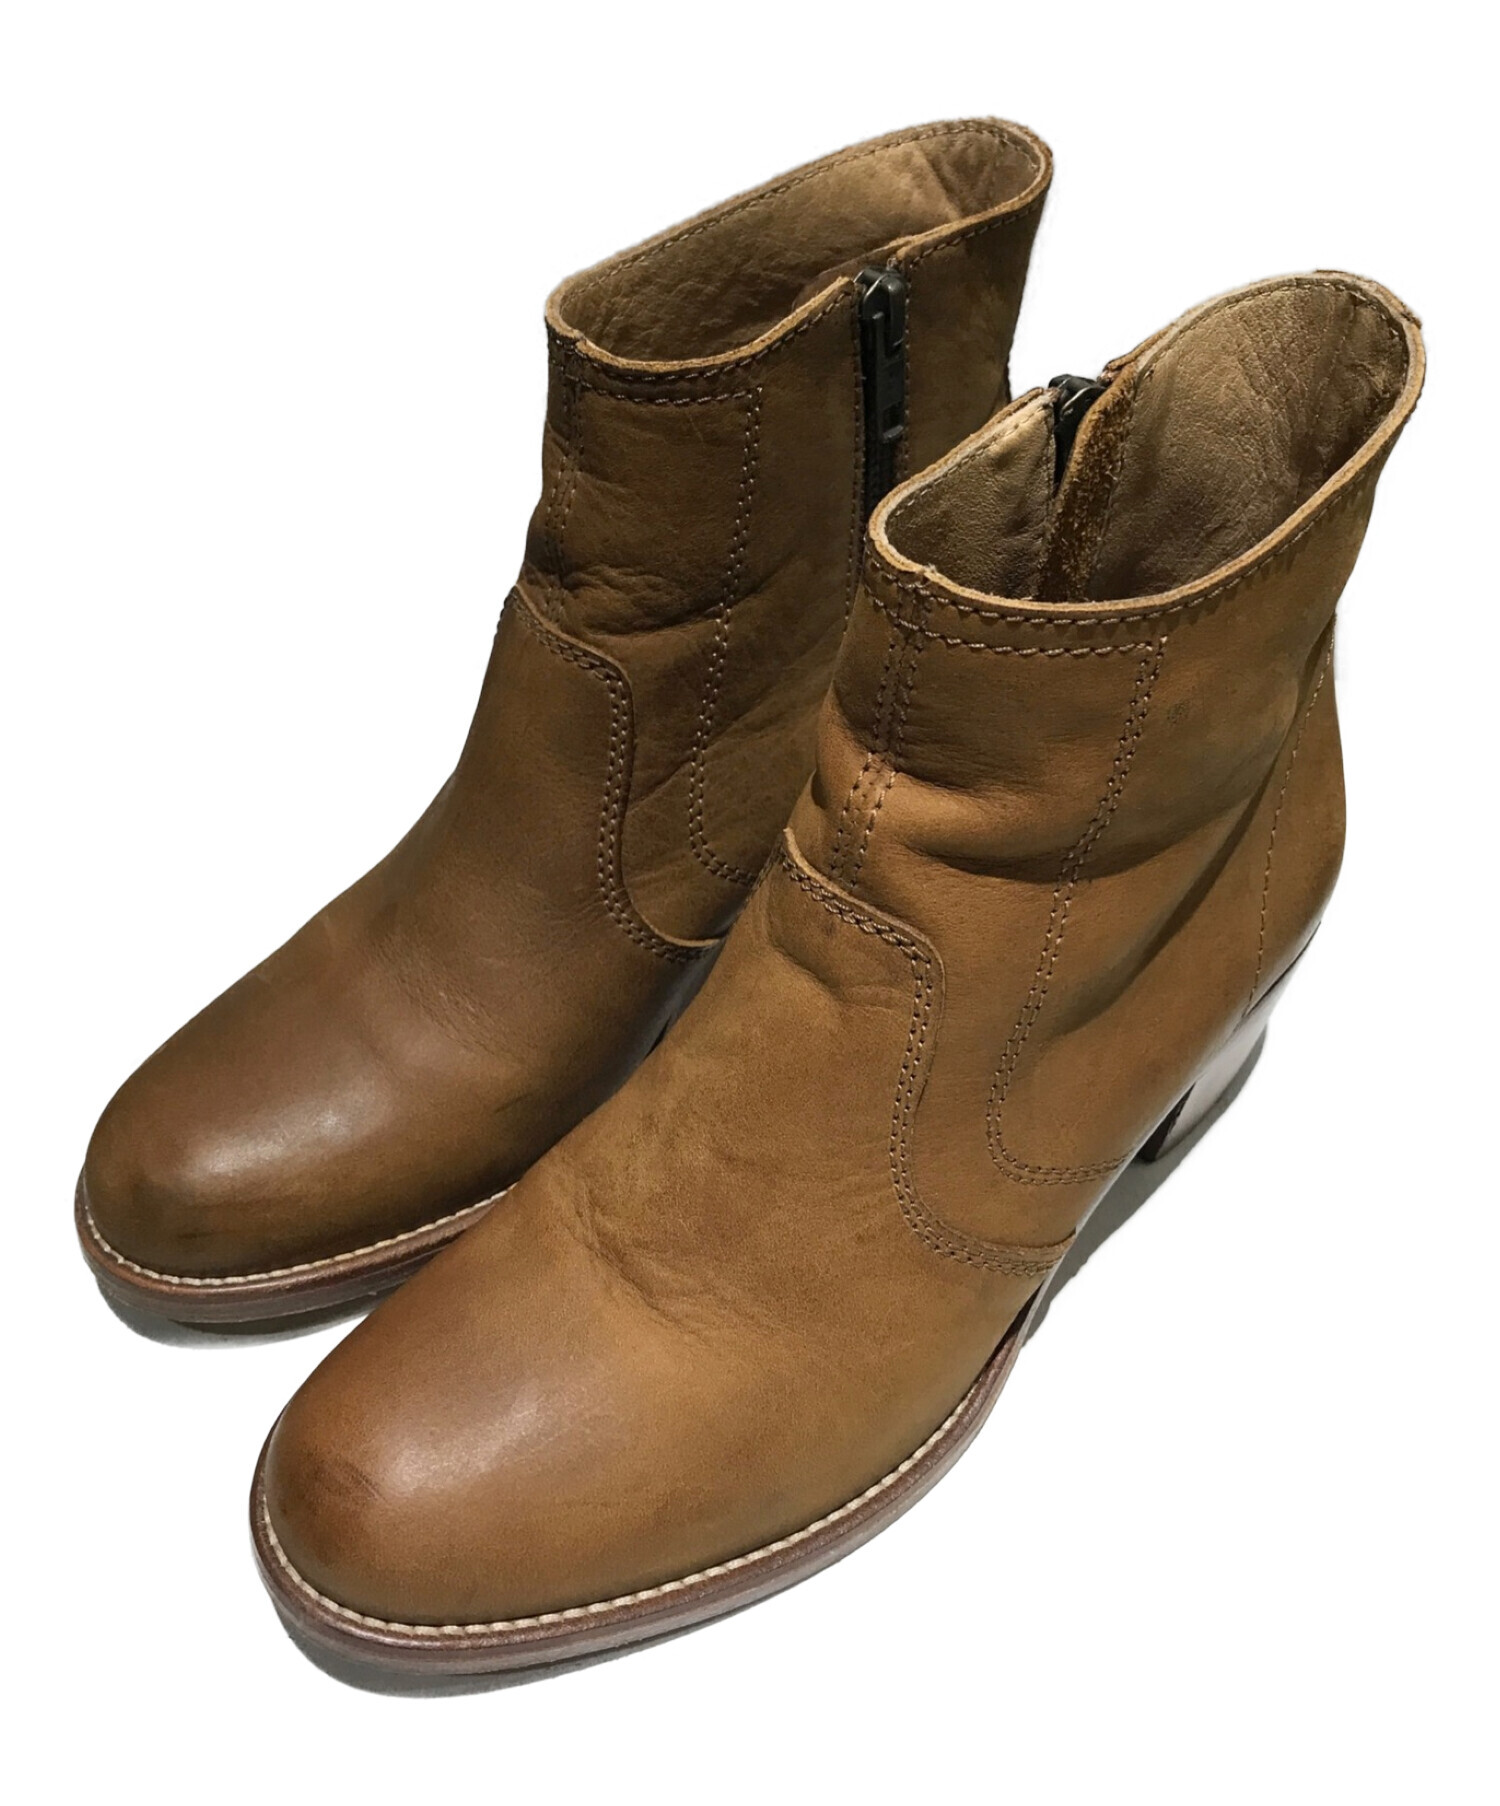 靴/シューズA.P.C. サイドゴア ブーツ ラバーソール ブラウン 茶色 ポルトガル製